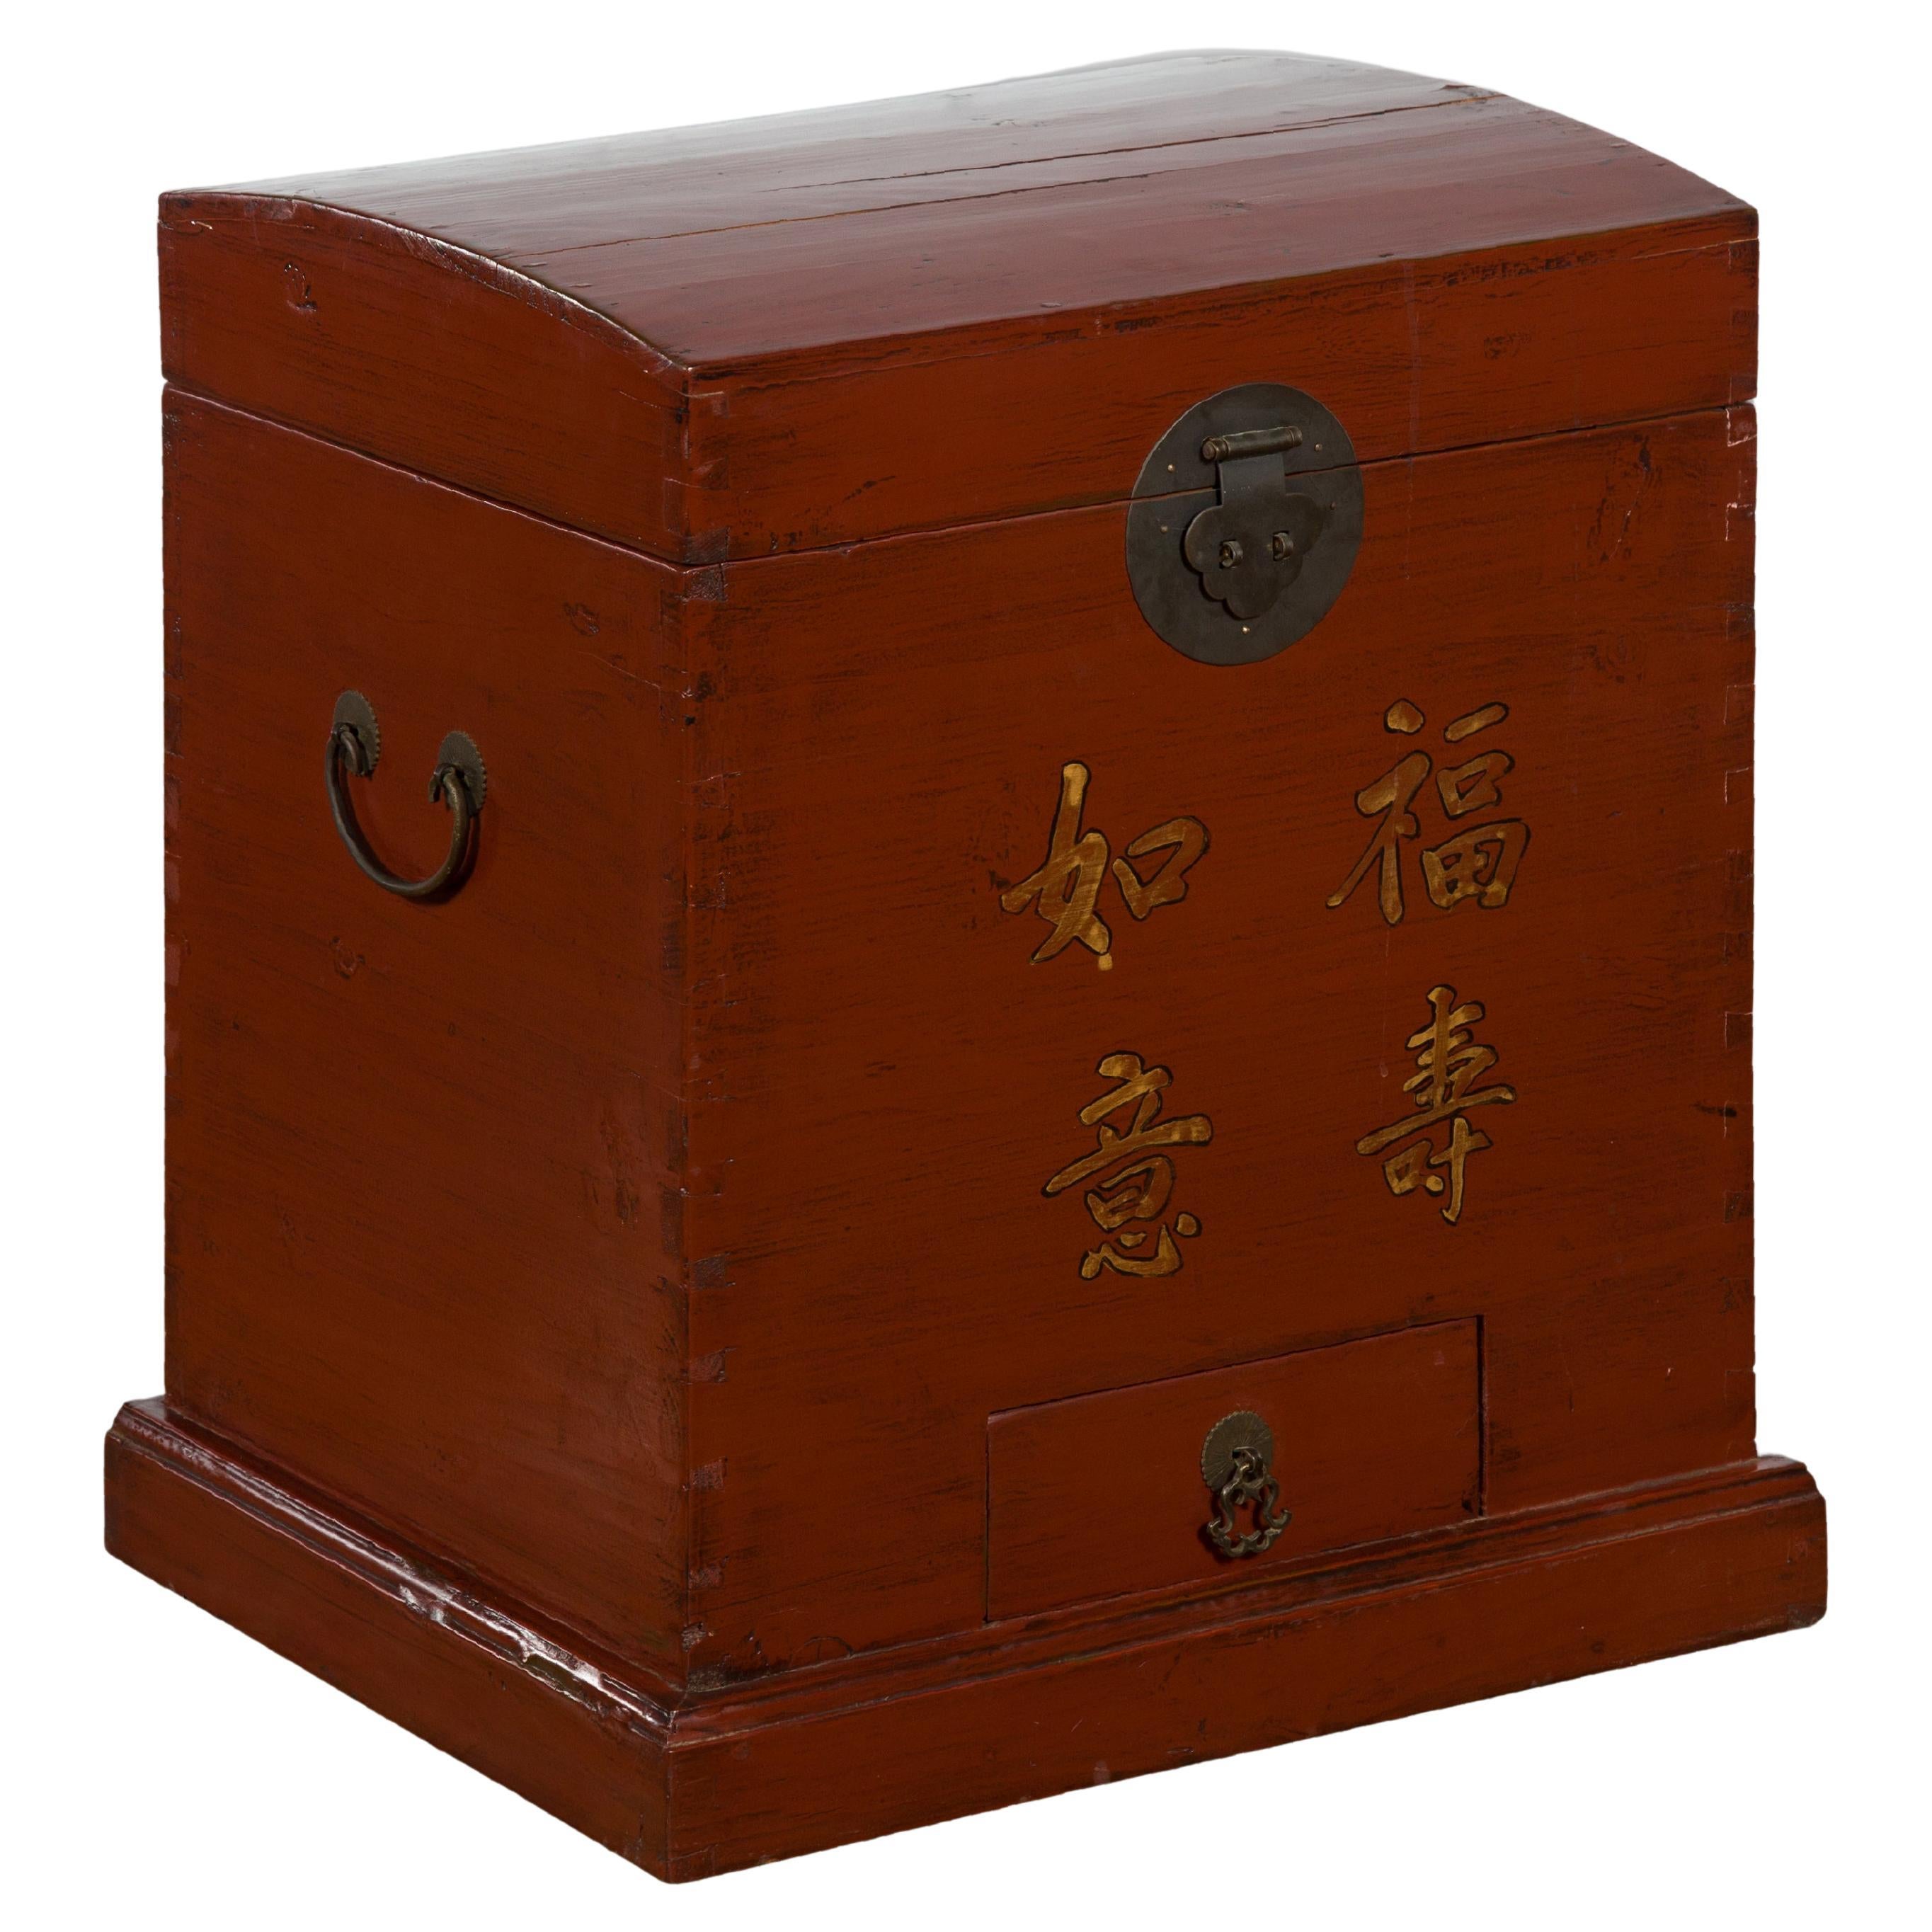 Coffre à trésors en laque rouge de la dynastie chinoise Qing avec calligraphie dorée